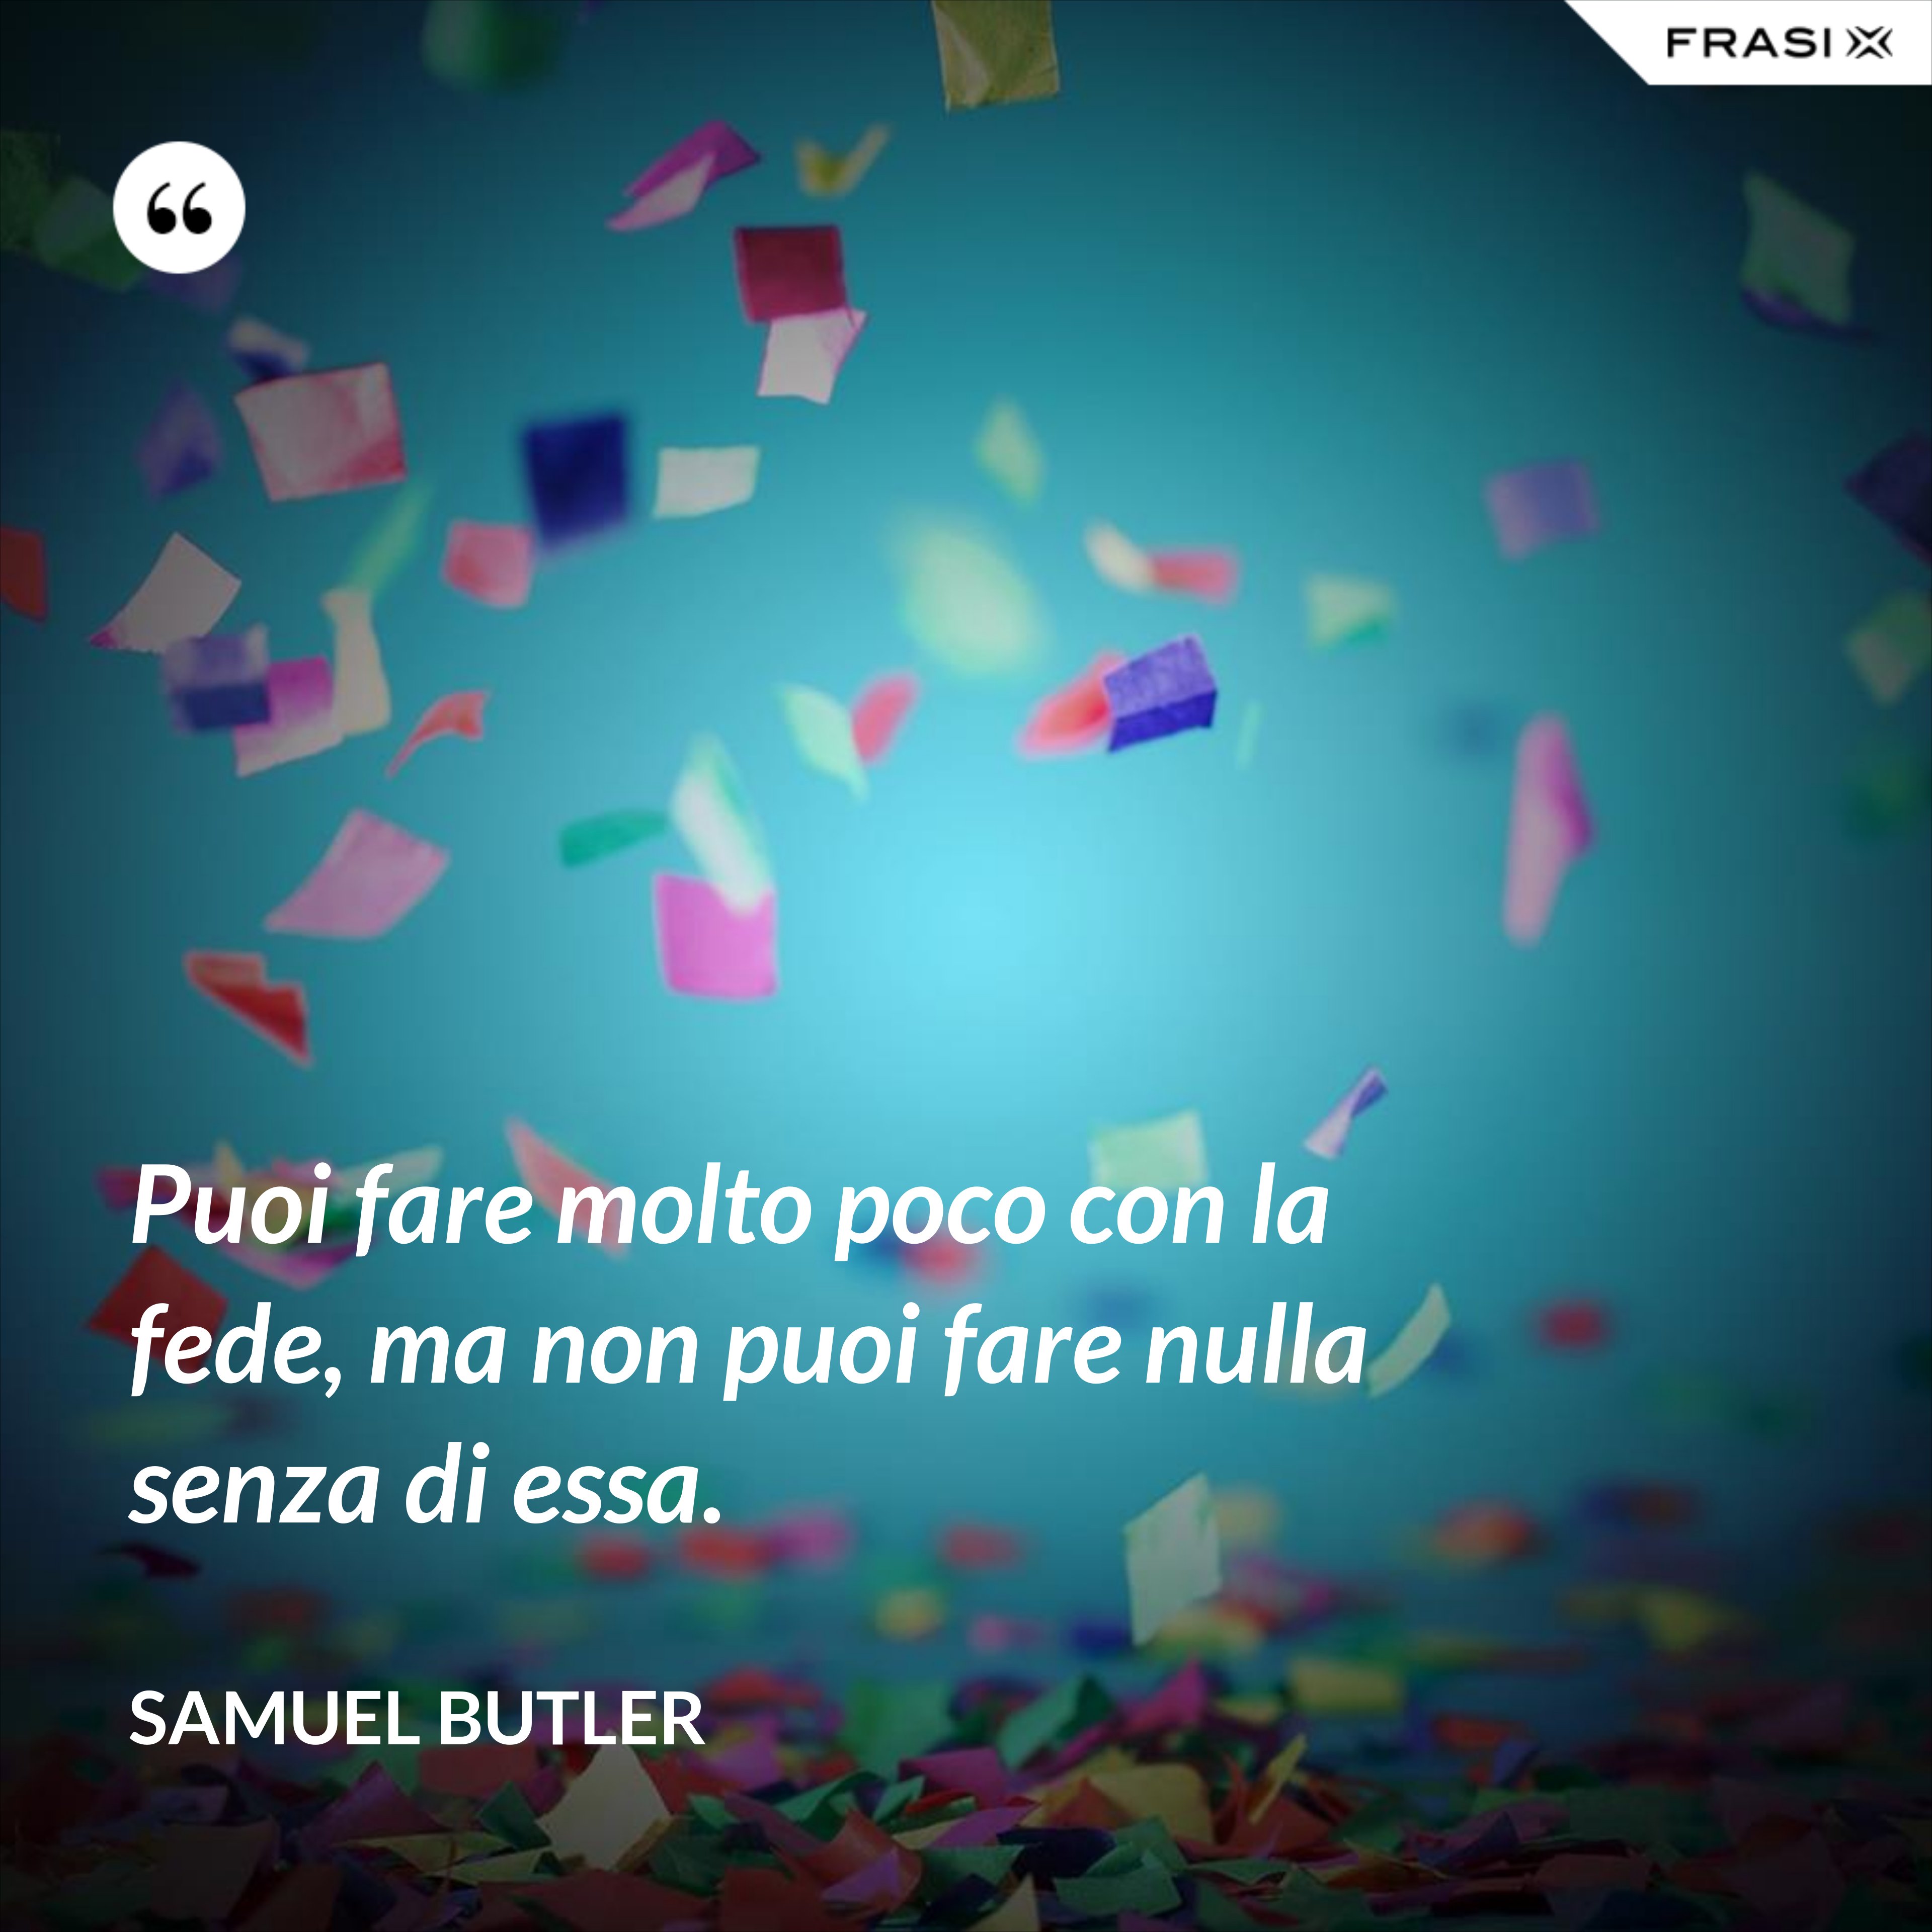 Puoi fare molto poco con la fede, ma non puoi fare nulla senza di essa. - Samuel Butler